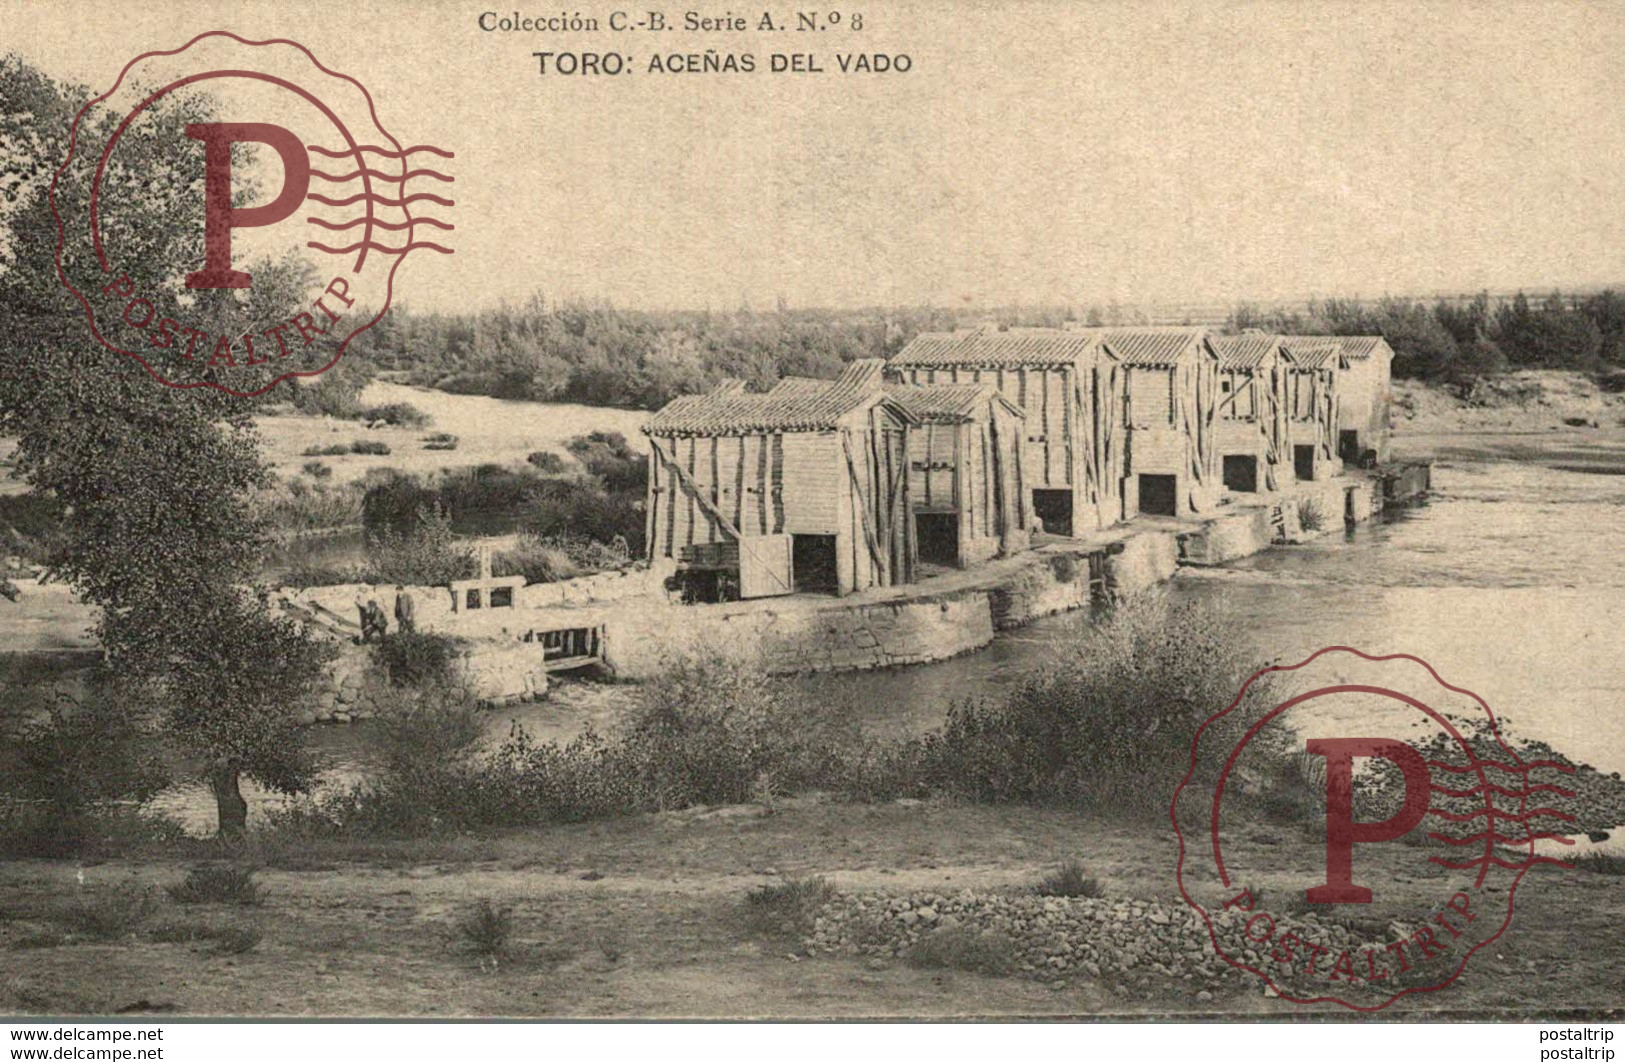 TORO. ACEÑAS DEL VADO - COLECCION C. B. SERIE A Nº8 - Zamora